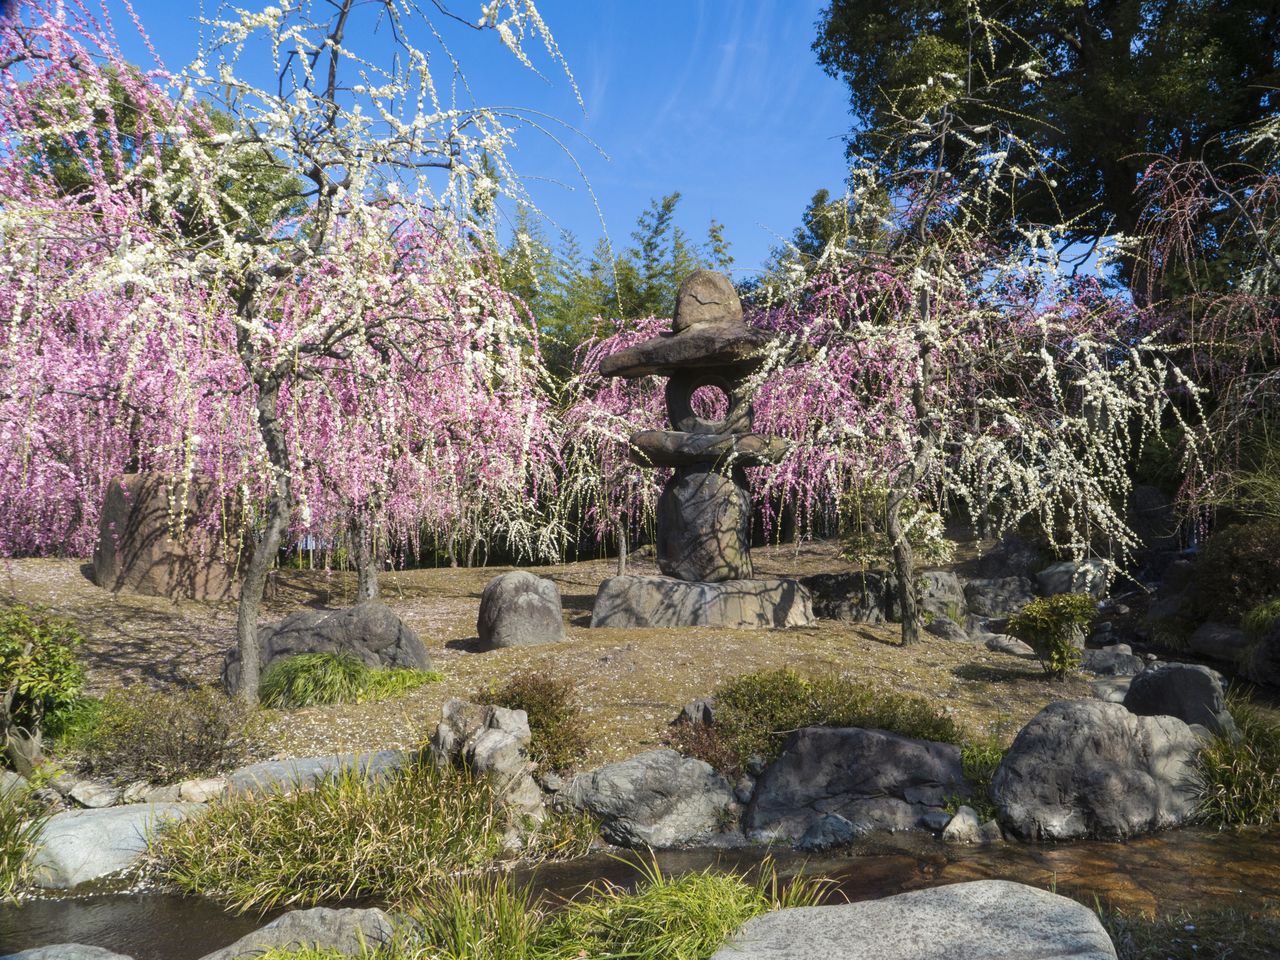 Le jardin Haru no Yama : une véritable œuvre d’art avec un ruisseau, des pierres de jardin et des arbres pleureurs en fleurs.